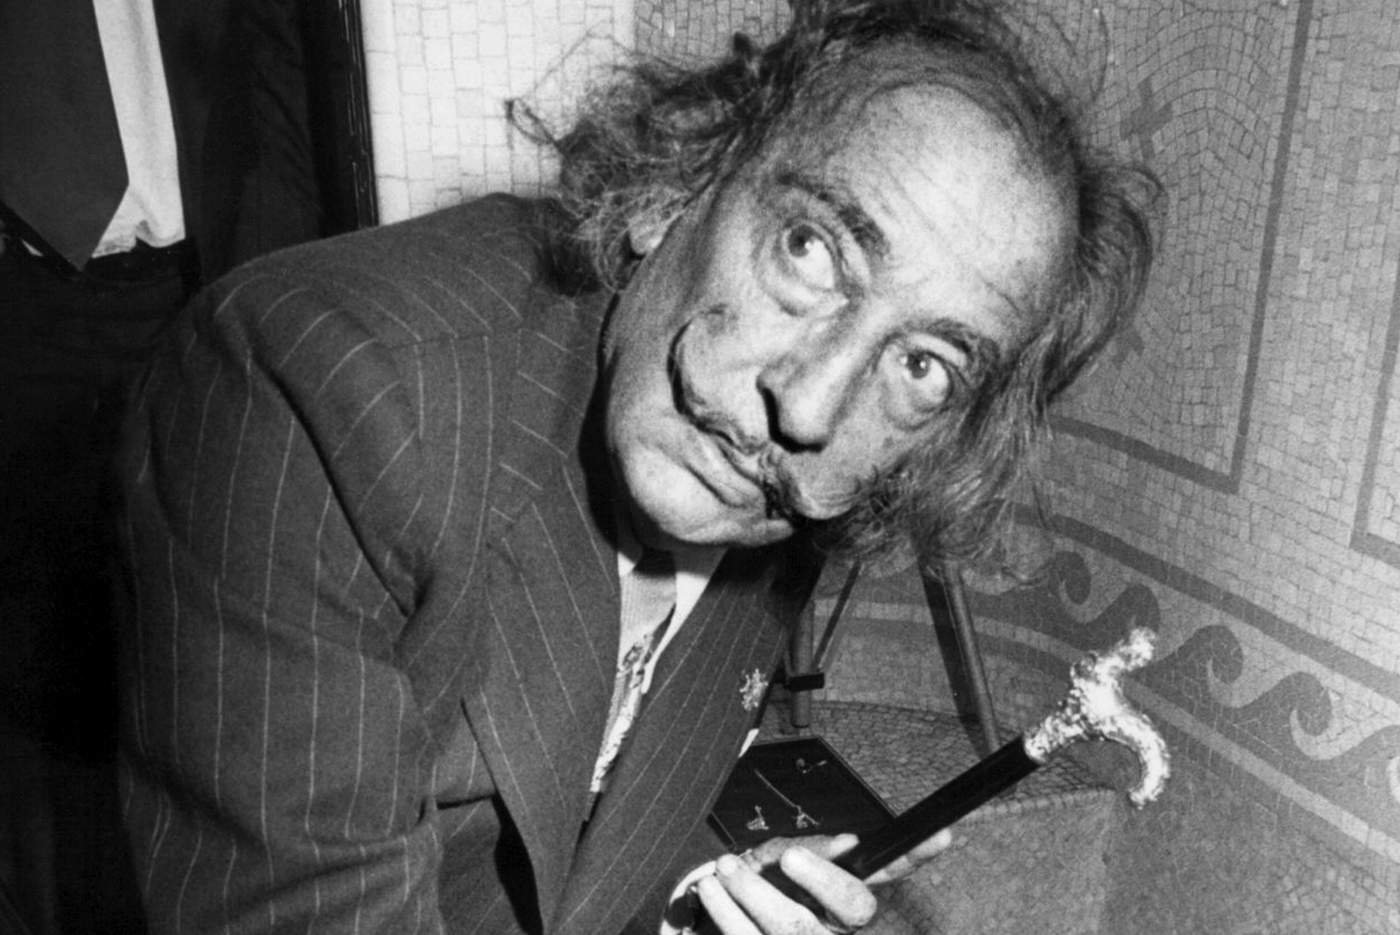 La vida del polémico artista surrealista Salvador Dalí terminó el 23 de enero de 1989, a los 84 años de edad. (ARCHIVO)